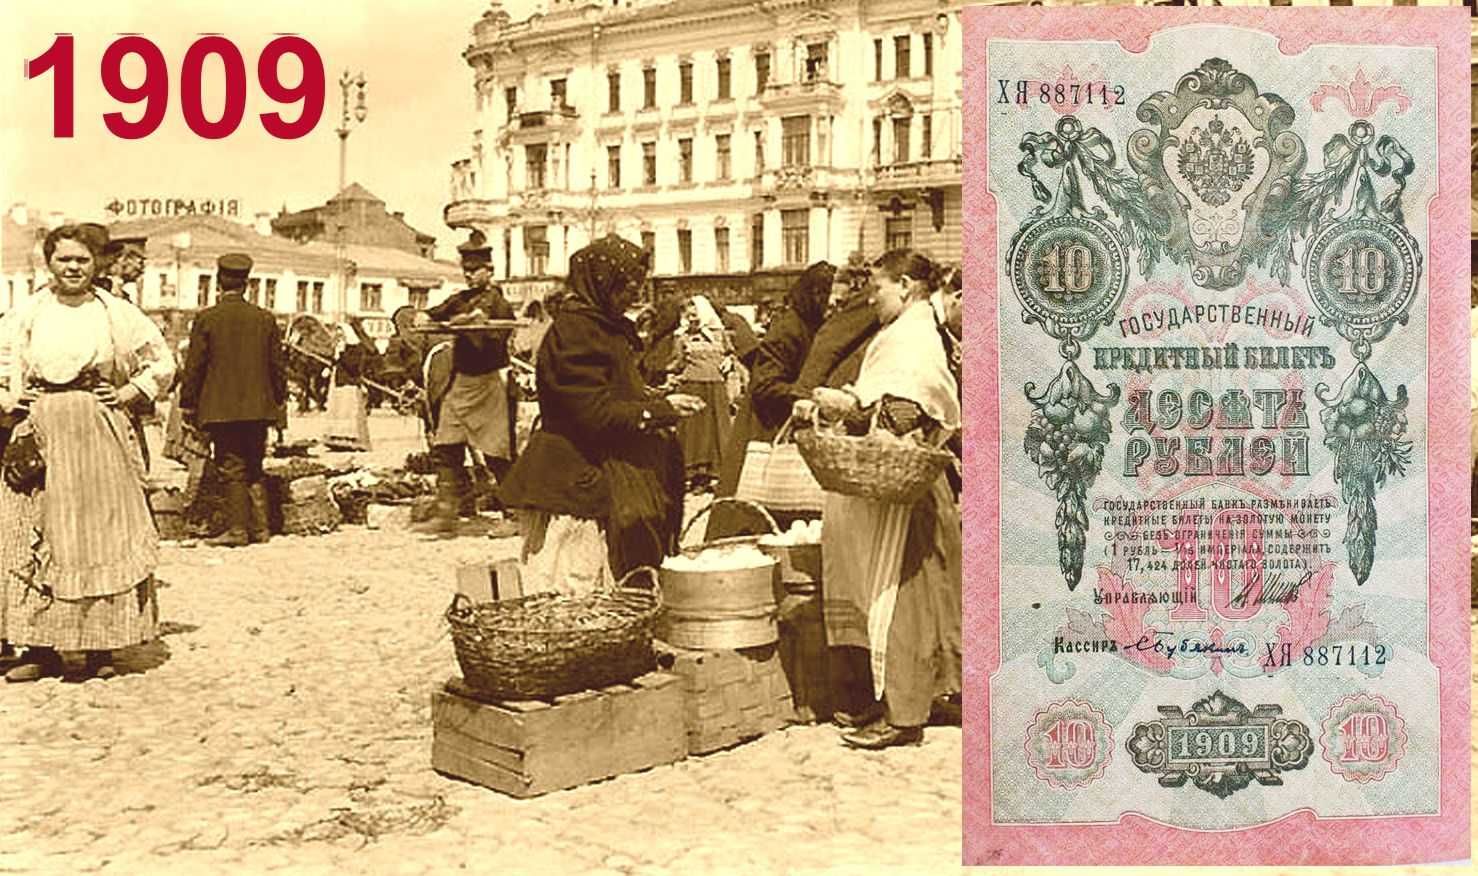 10 руб 1909 г. Государственный кредитный билет, Шипов, Бубякин. XF